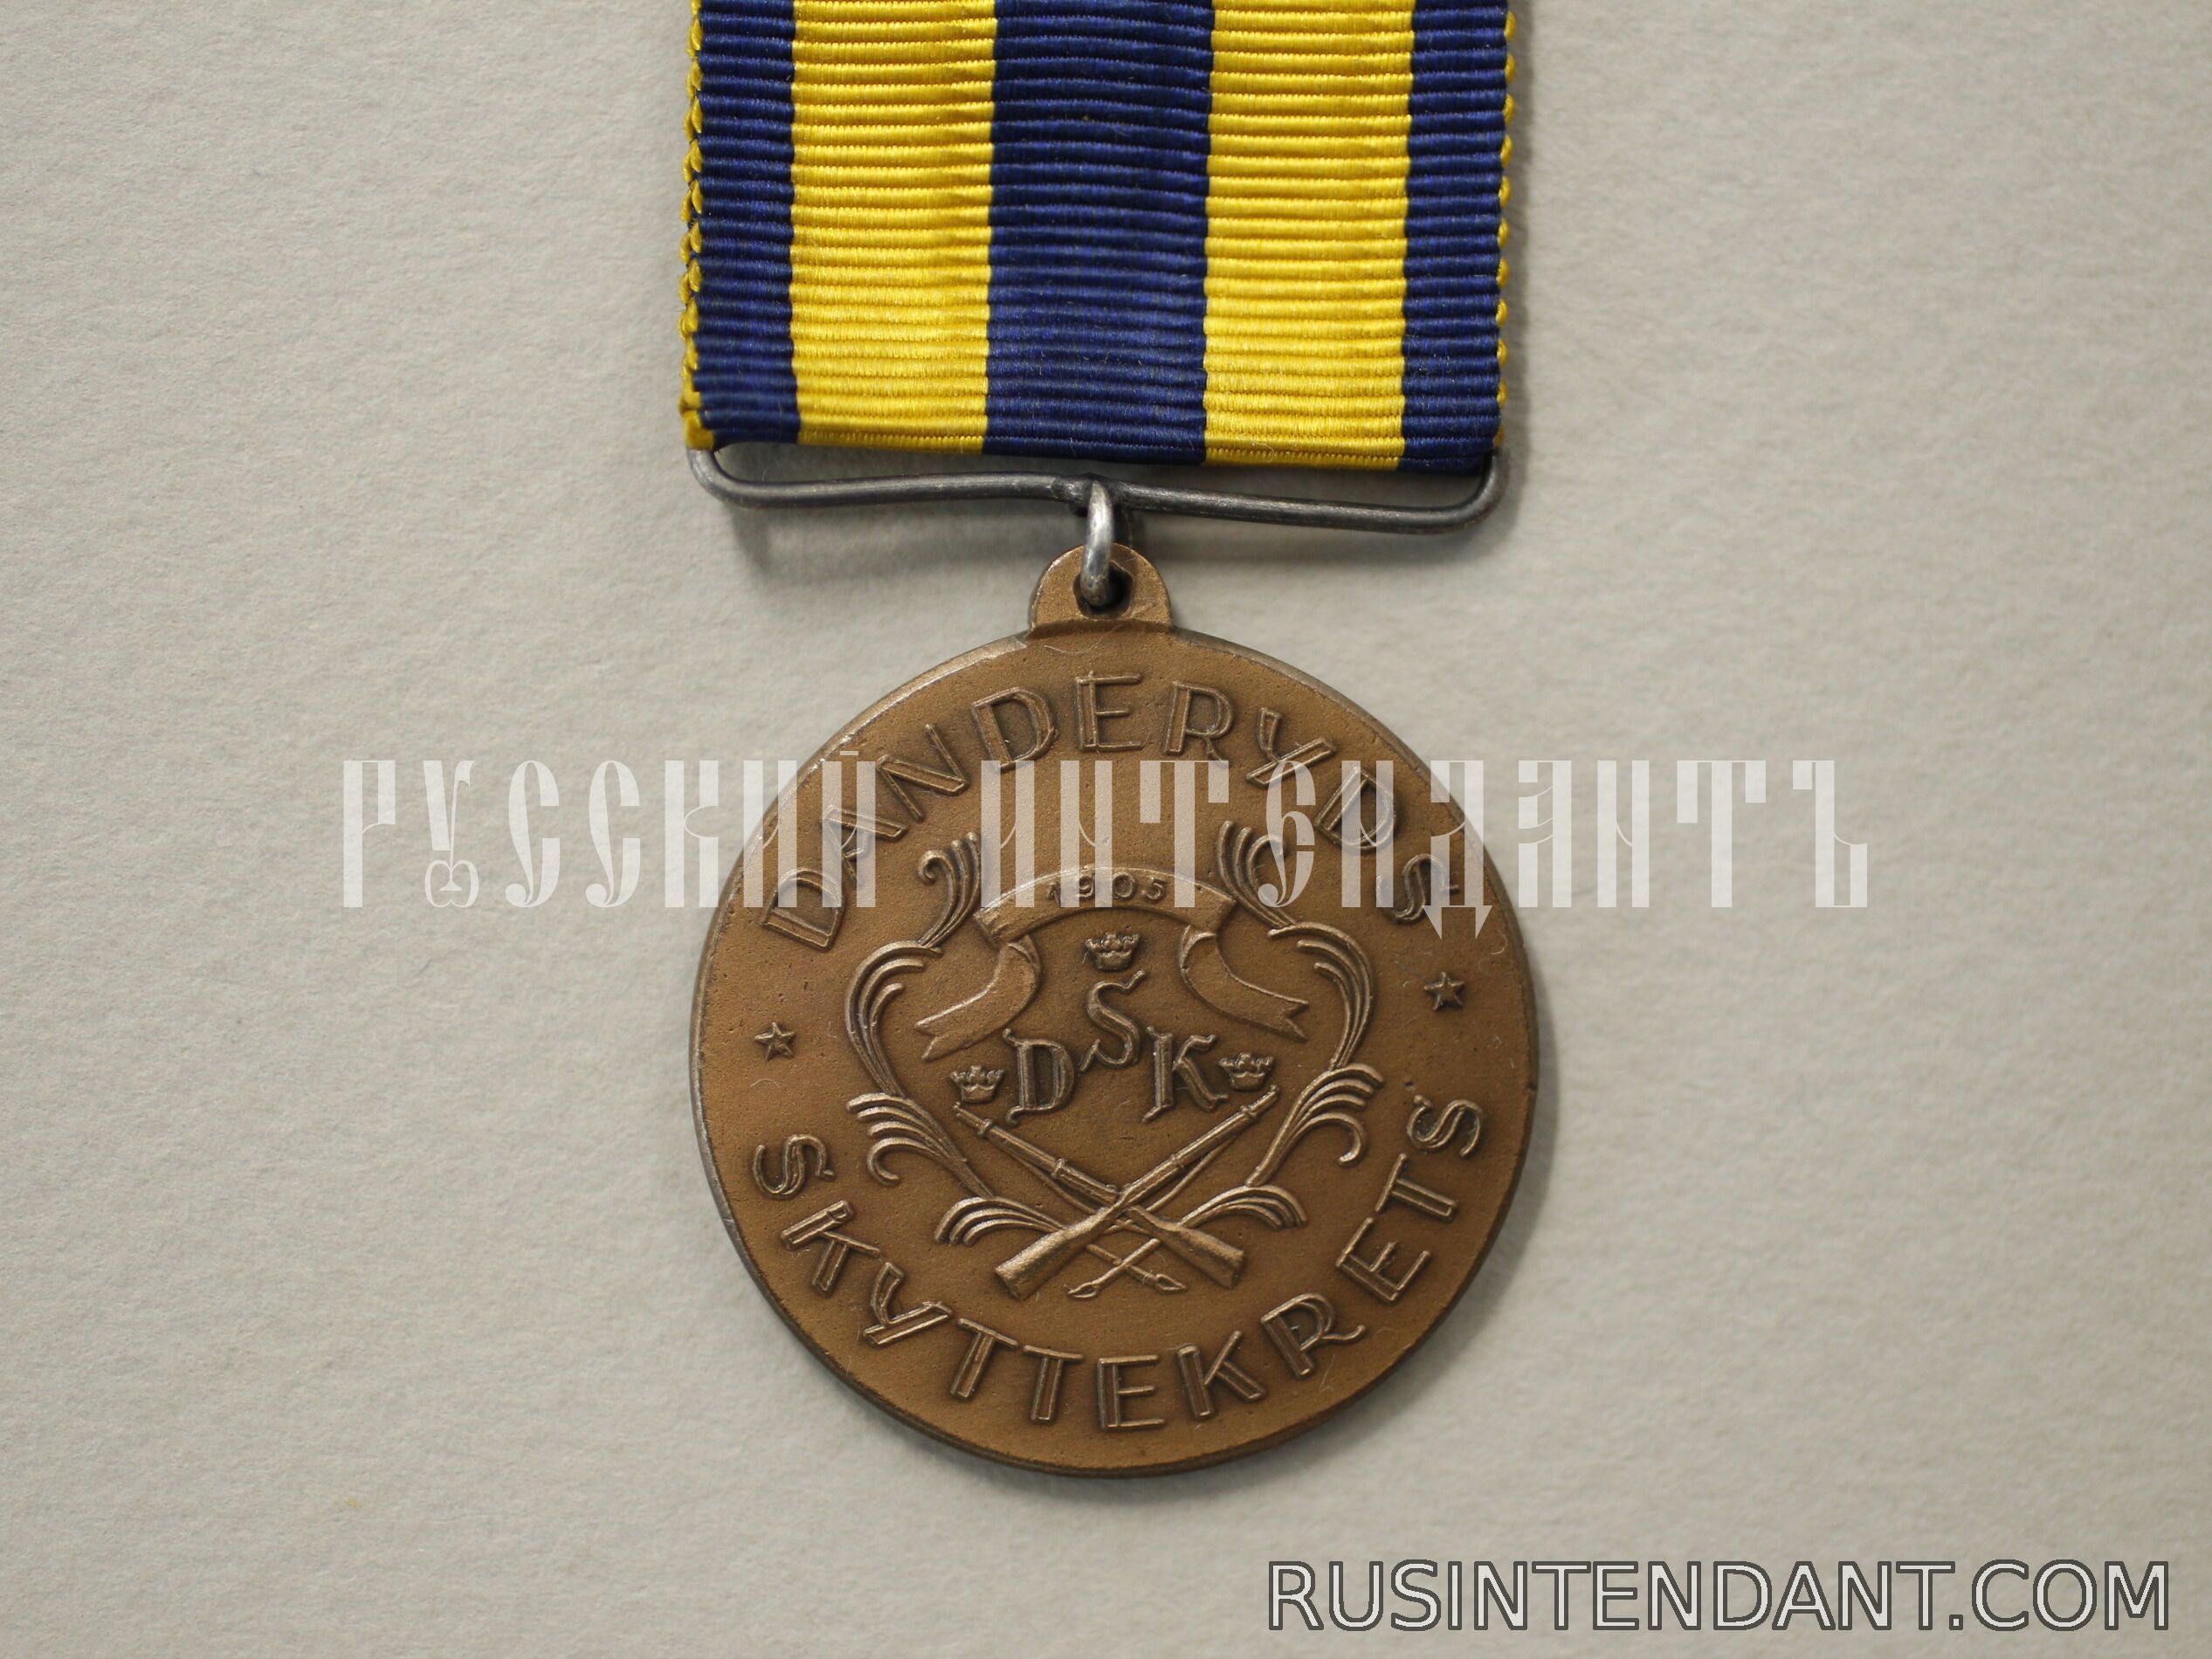 Фото 1: Наградная медаль стрельбища Дандерюд 